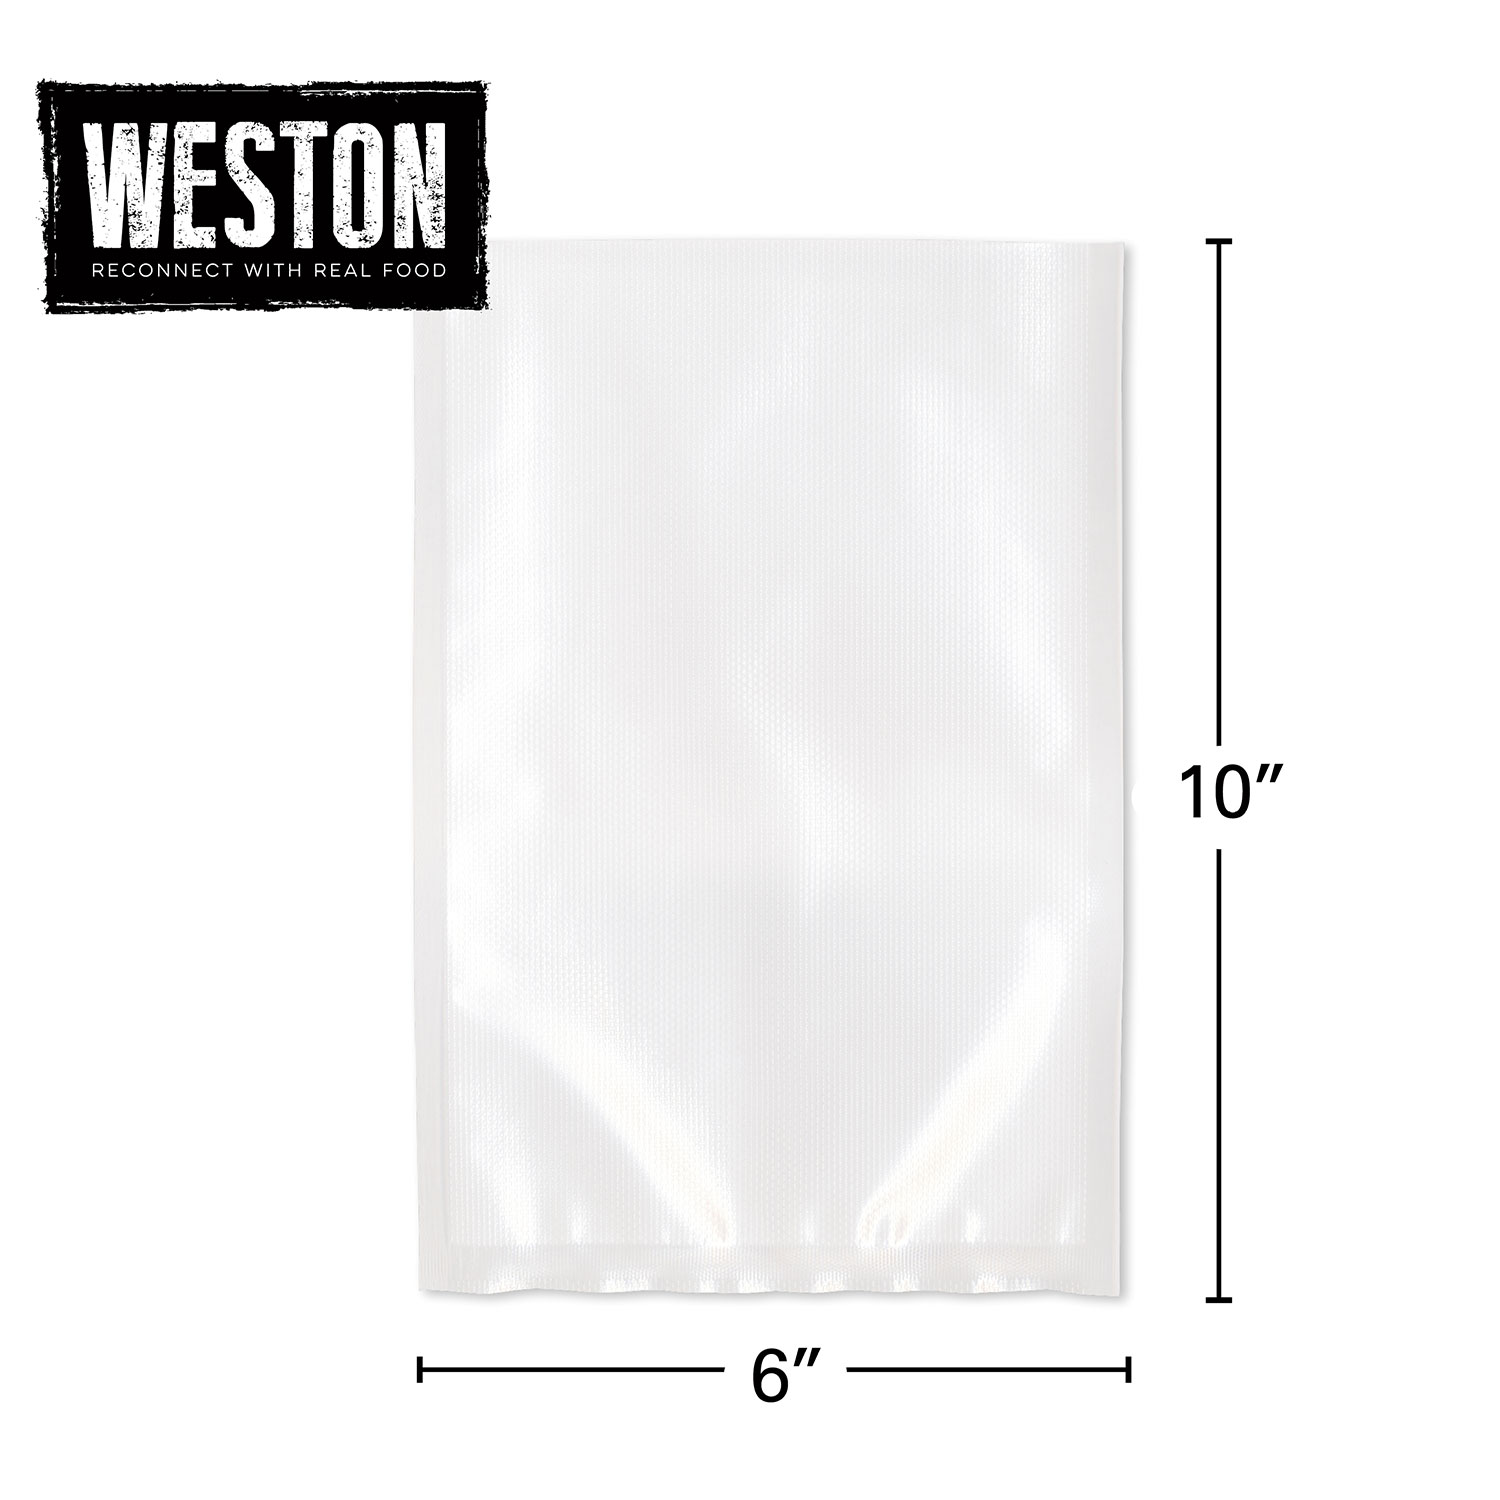 Weston Vacuum Sealer Bag 6 x 10 (Pint) & Reviews